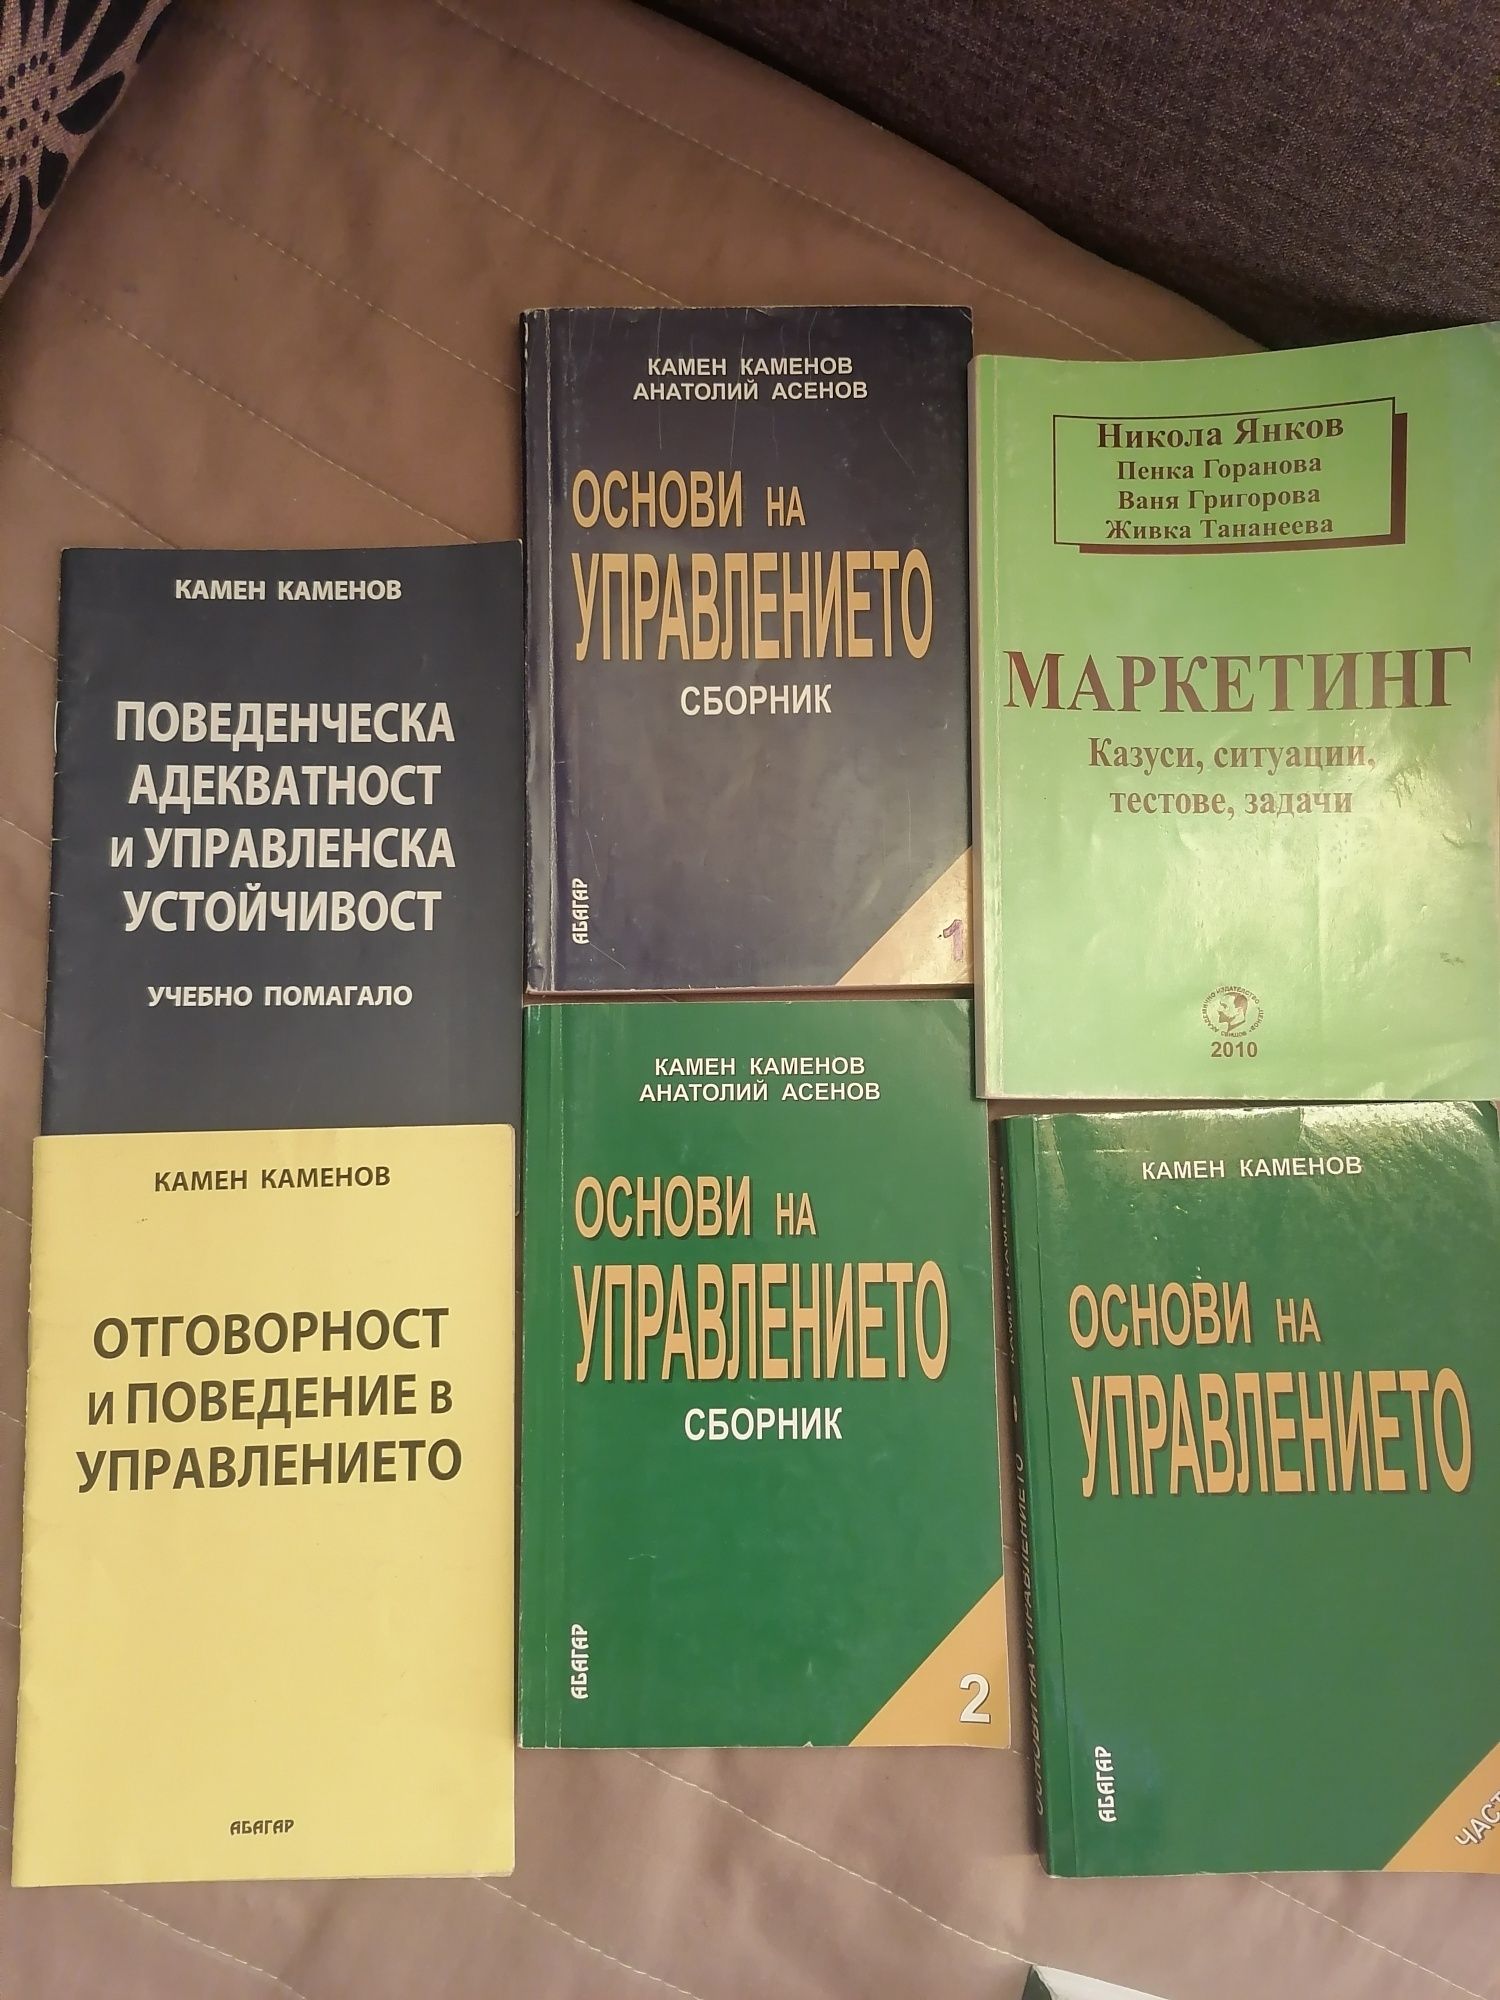 Учебници по счетоводство и управление.